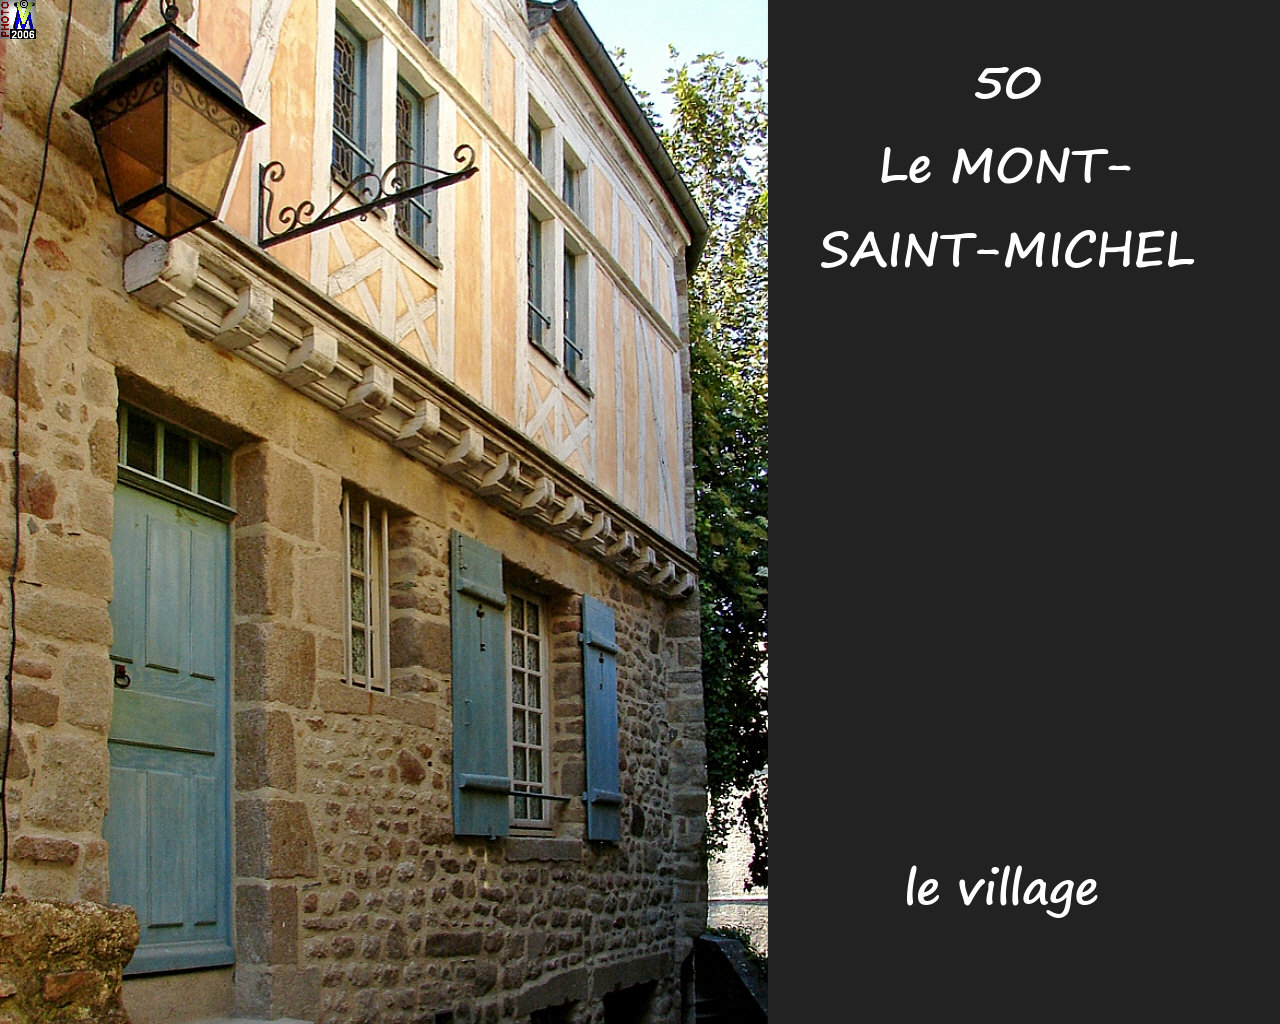 50LE-MONT-ST-MICHEL_village_302.jpg